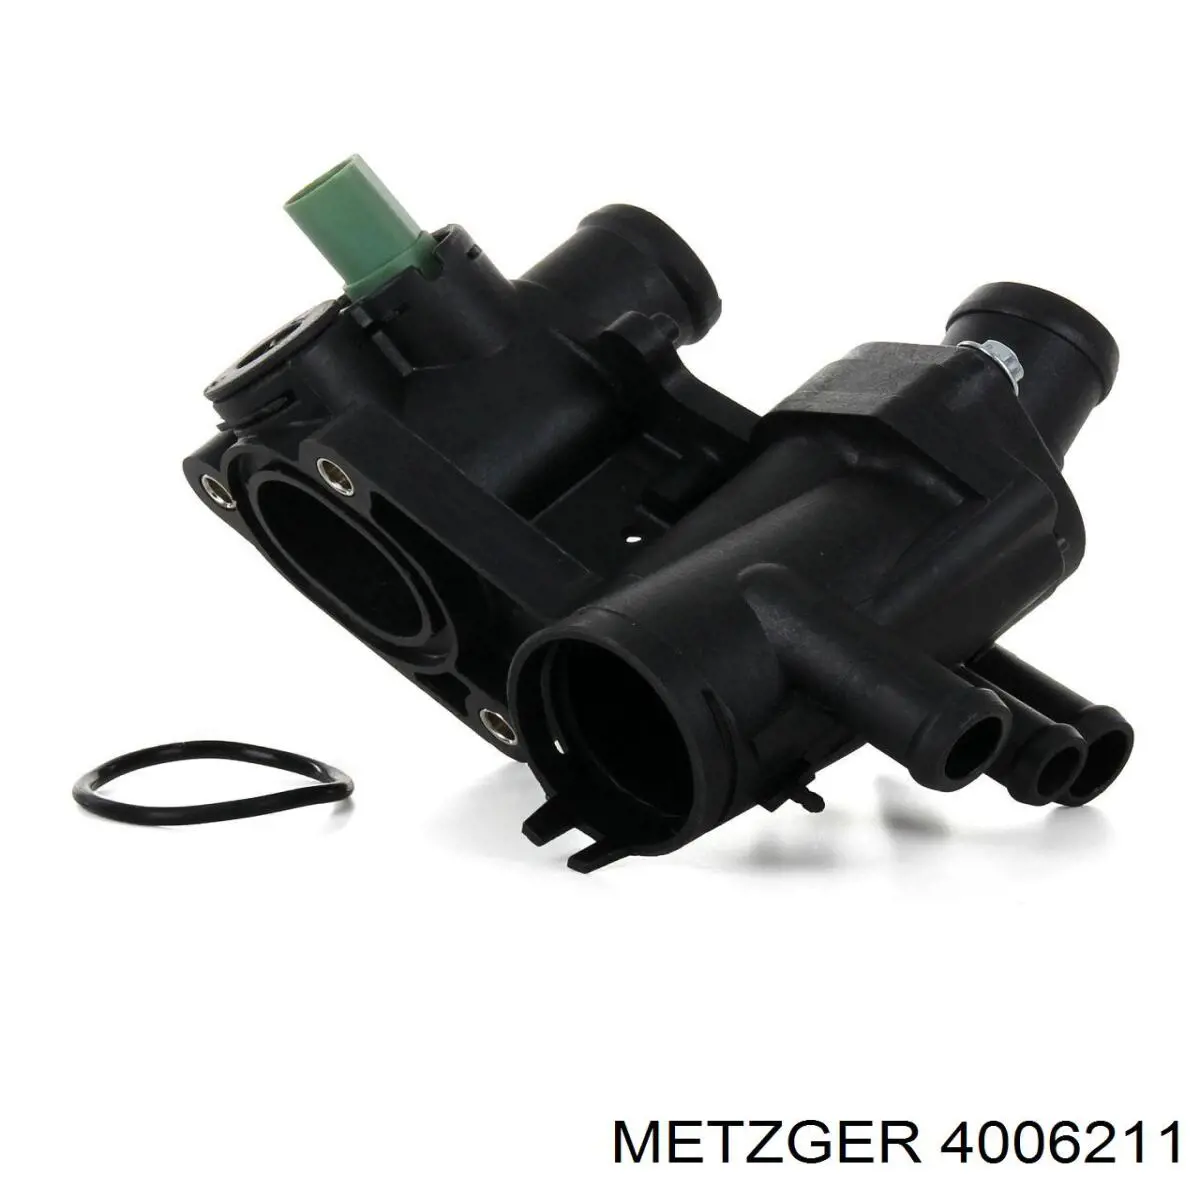 4006211 Metzger caja del termostato